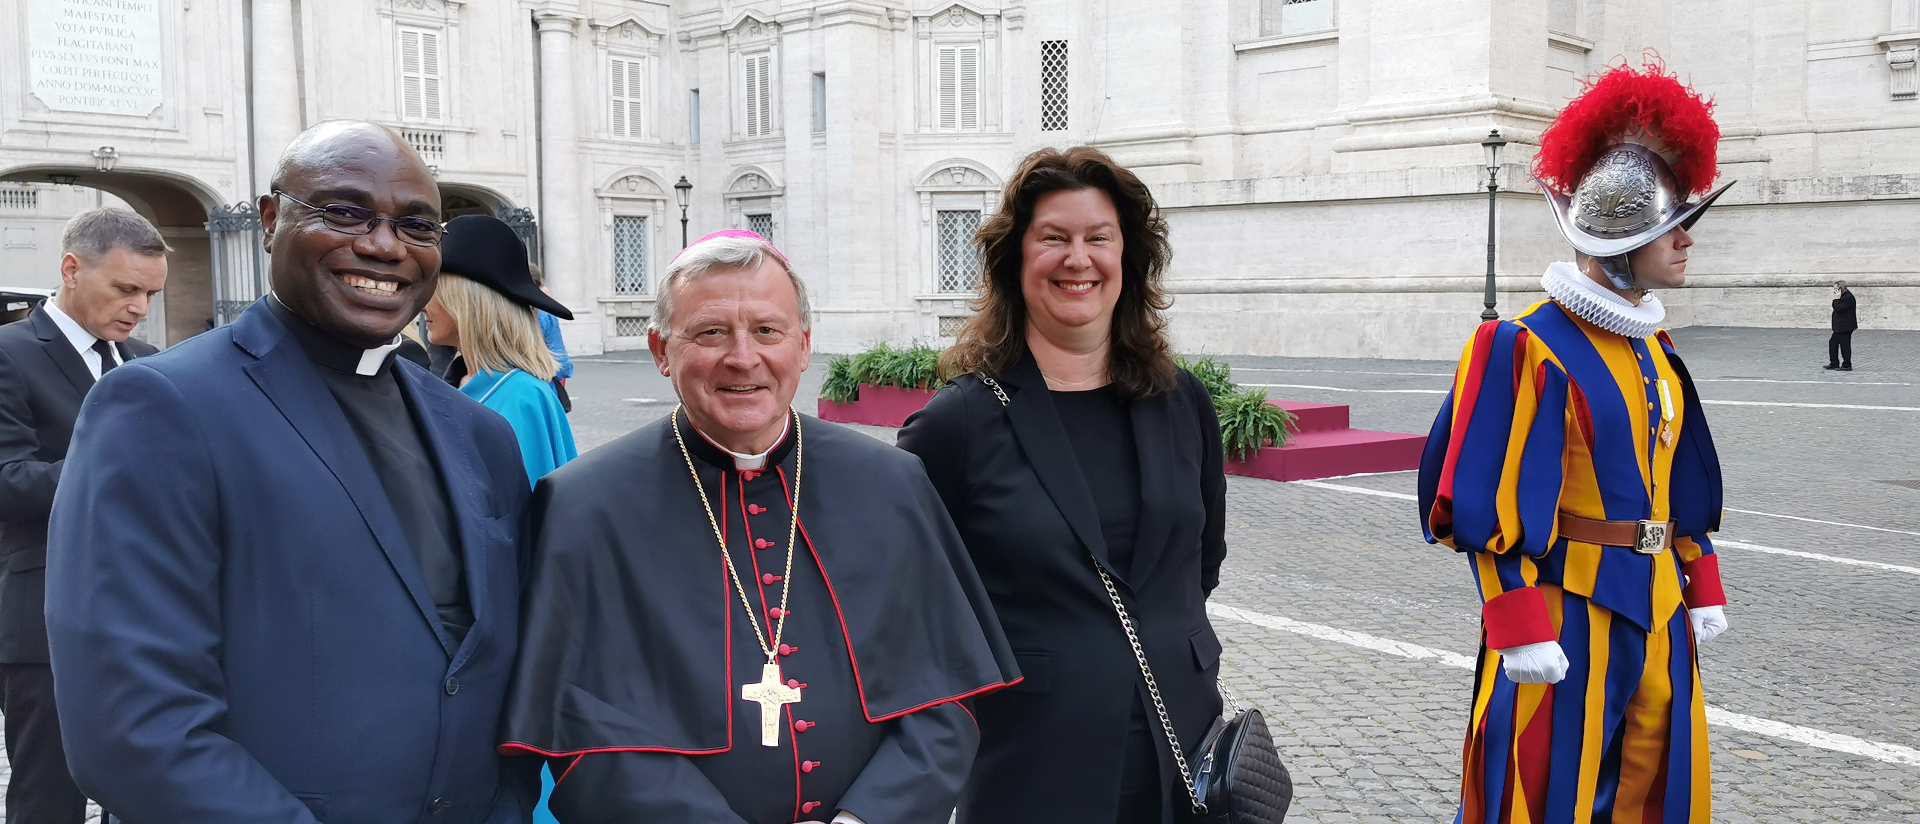 In Rom: Der Basler Weihbischof Josef Stübi, links Bischofsvikar Valentine Koledoye, rechts Tatjana Disteli, Generalsekretärin der Aargauer Landeskirche.